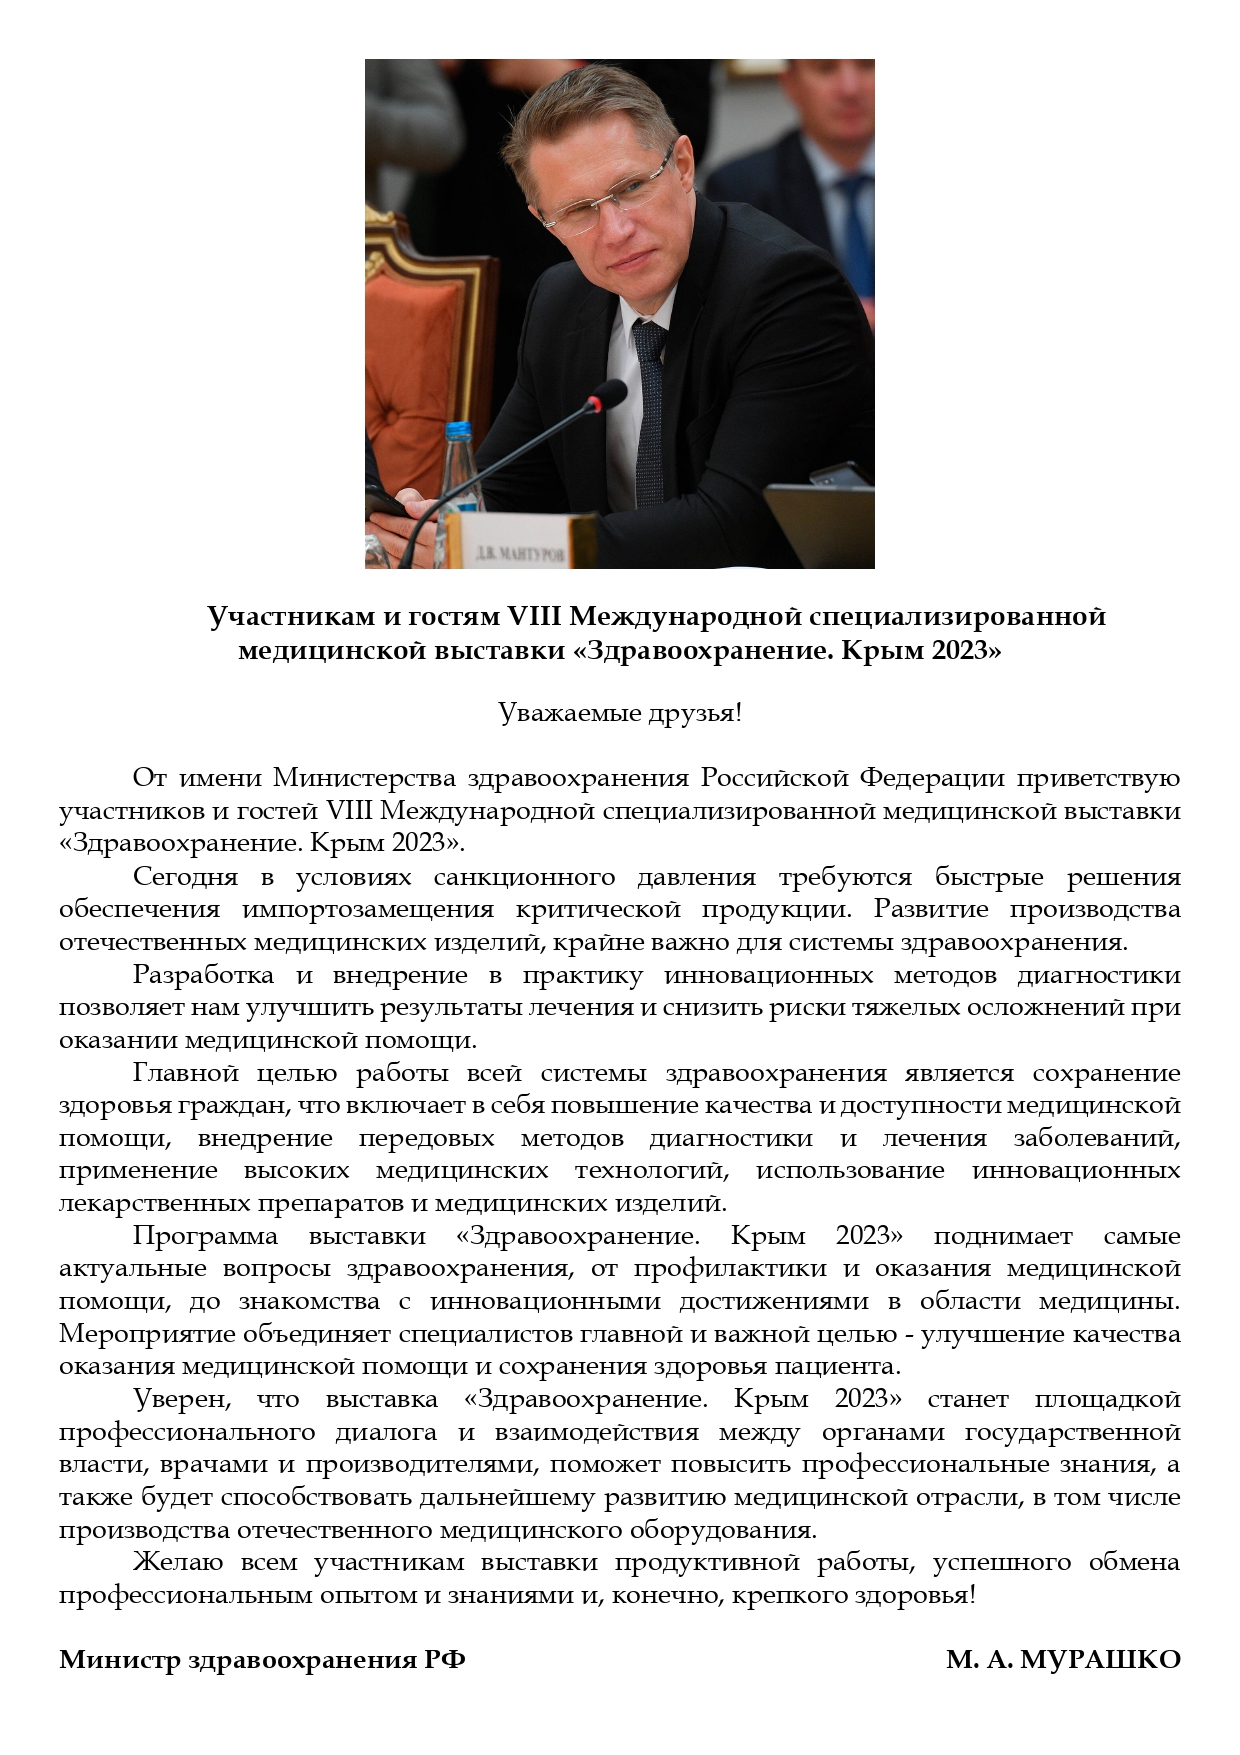 Приветствие Министра здравоохранения РФ к выставке "Здравоохранение. Крым 2023"